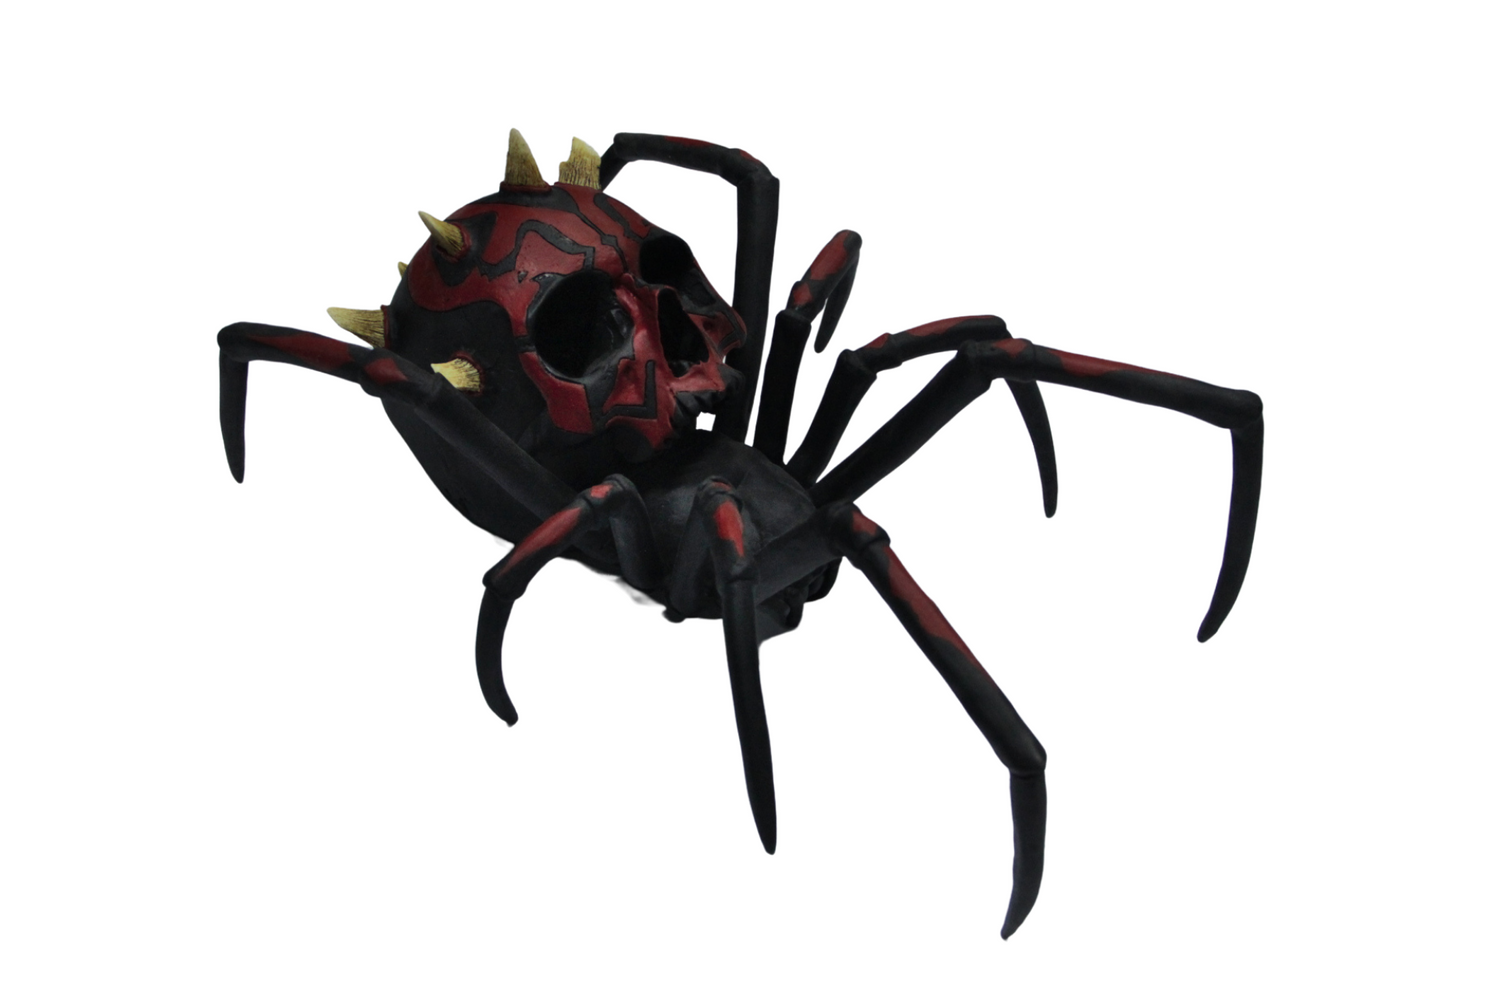 Darth Maul Spider